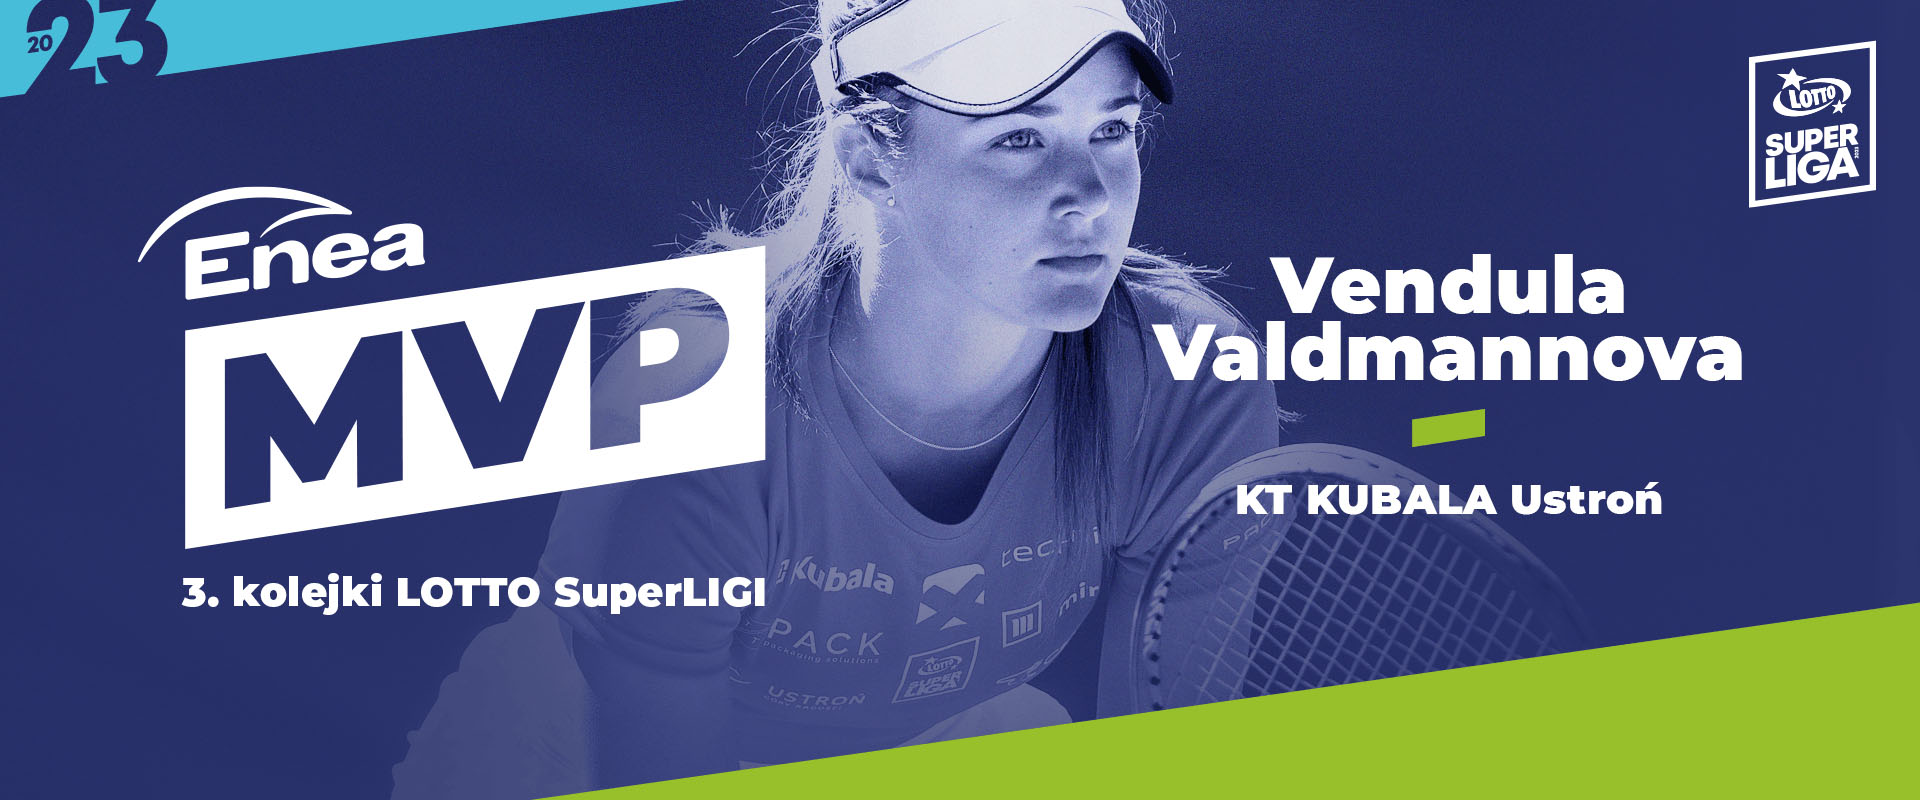 Vendula Valdmannova - Enea MVP 3. kolejki